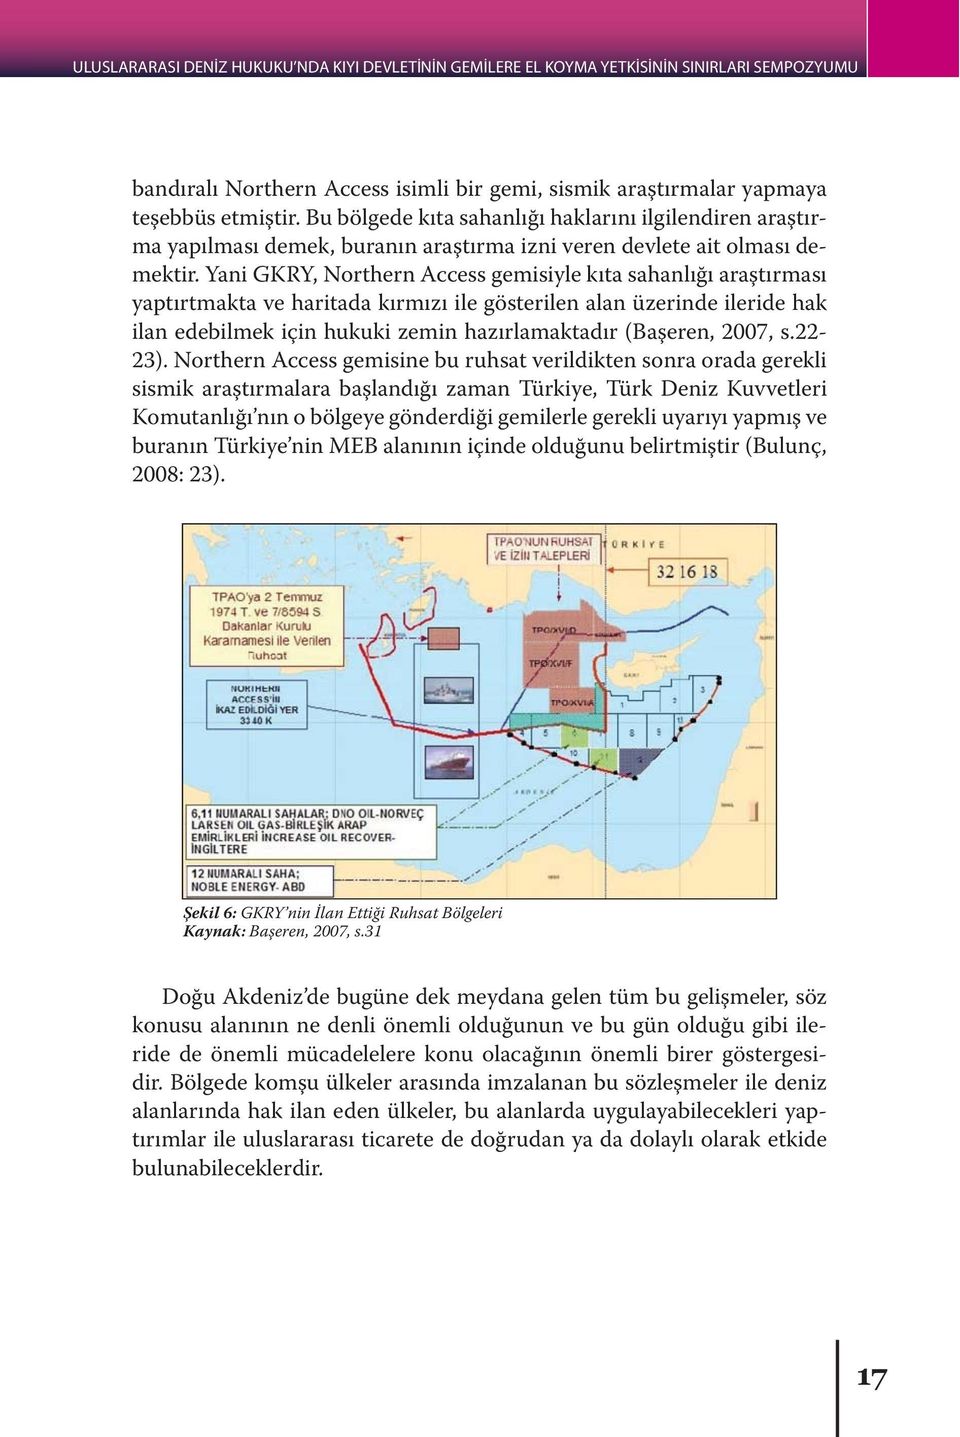 Yani GKRY, Northern Access gemisiyle kıta sahanlığı araştırması yaptırtmakta ve haritada kırmızı ile gösterilen alan üzerinde ileride hak ilan edebilmek için hukuki zemin hazırlamaktadır (Başeren,